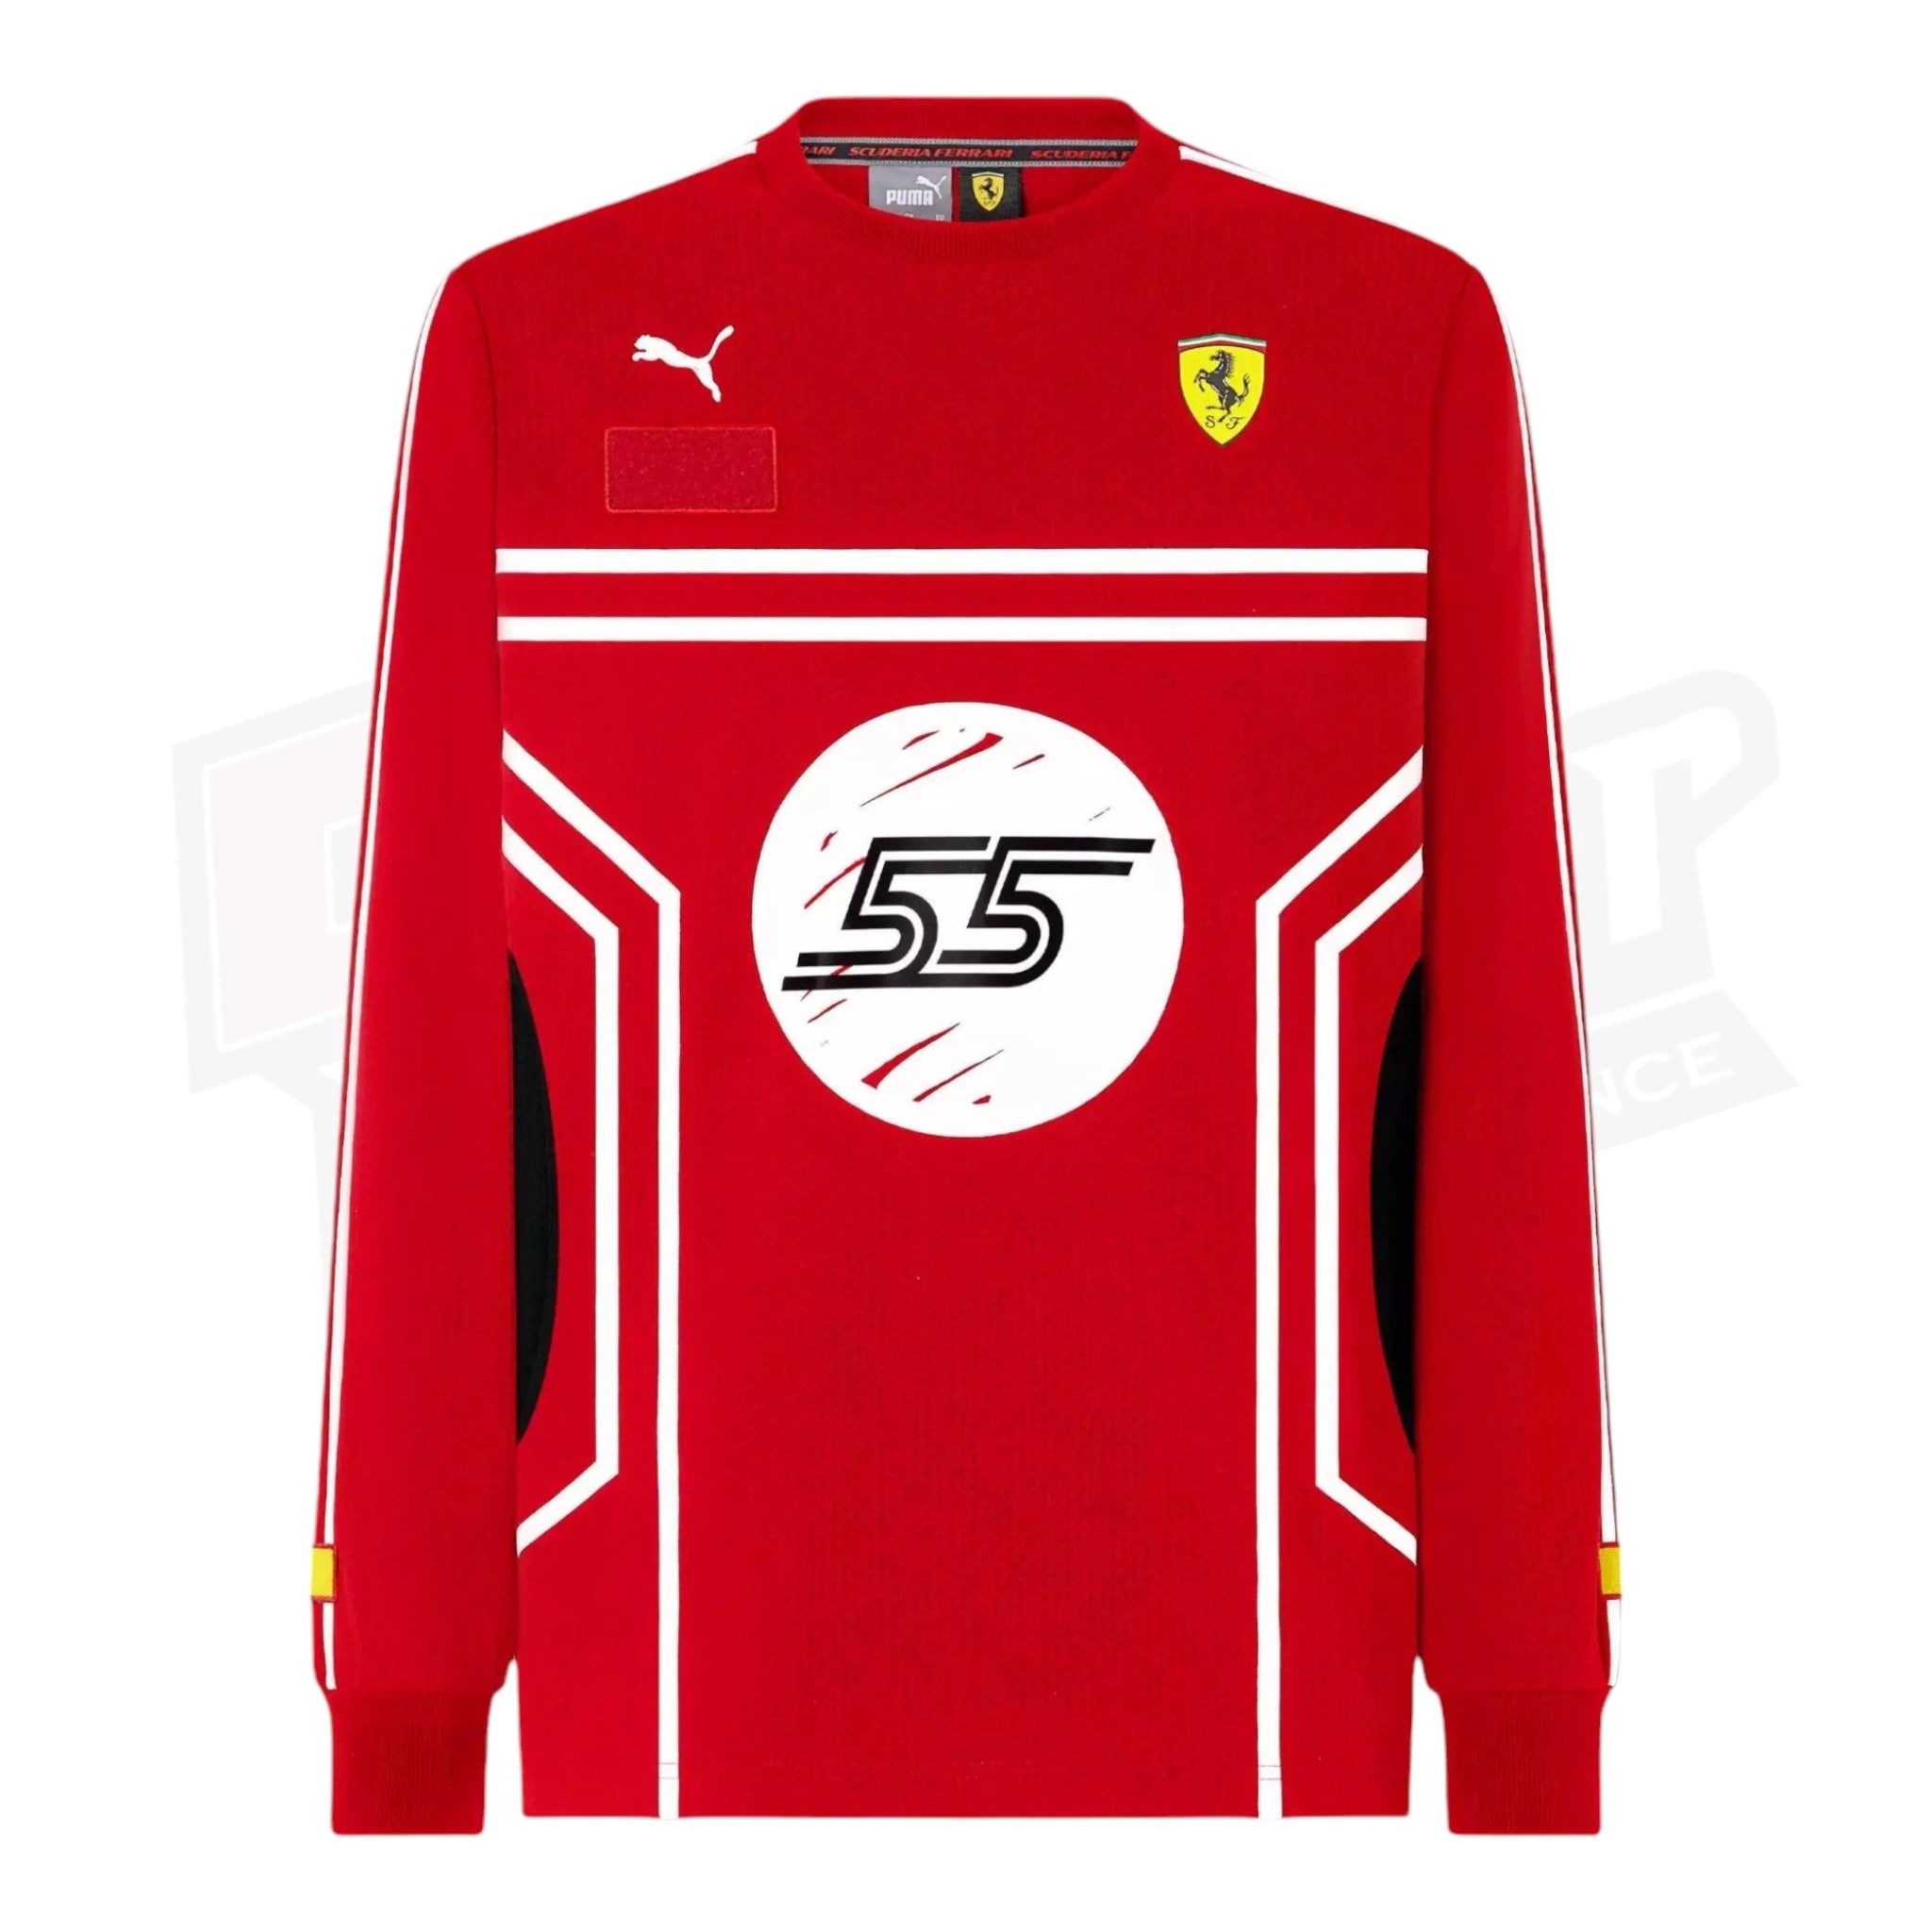 Scuderia Ferrari Puma Corlos Sainz jersey - Joshua Vides